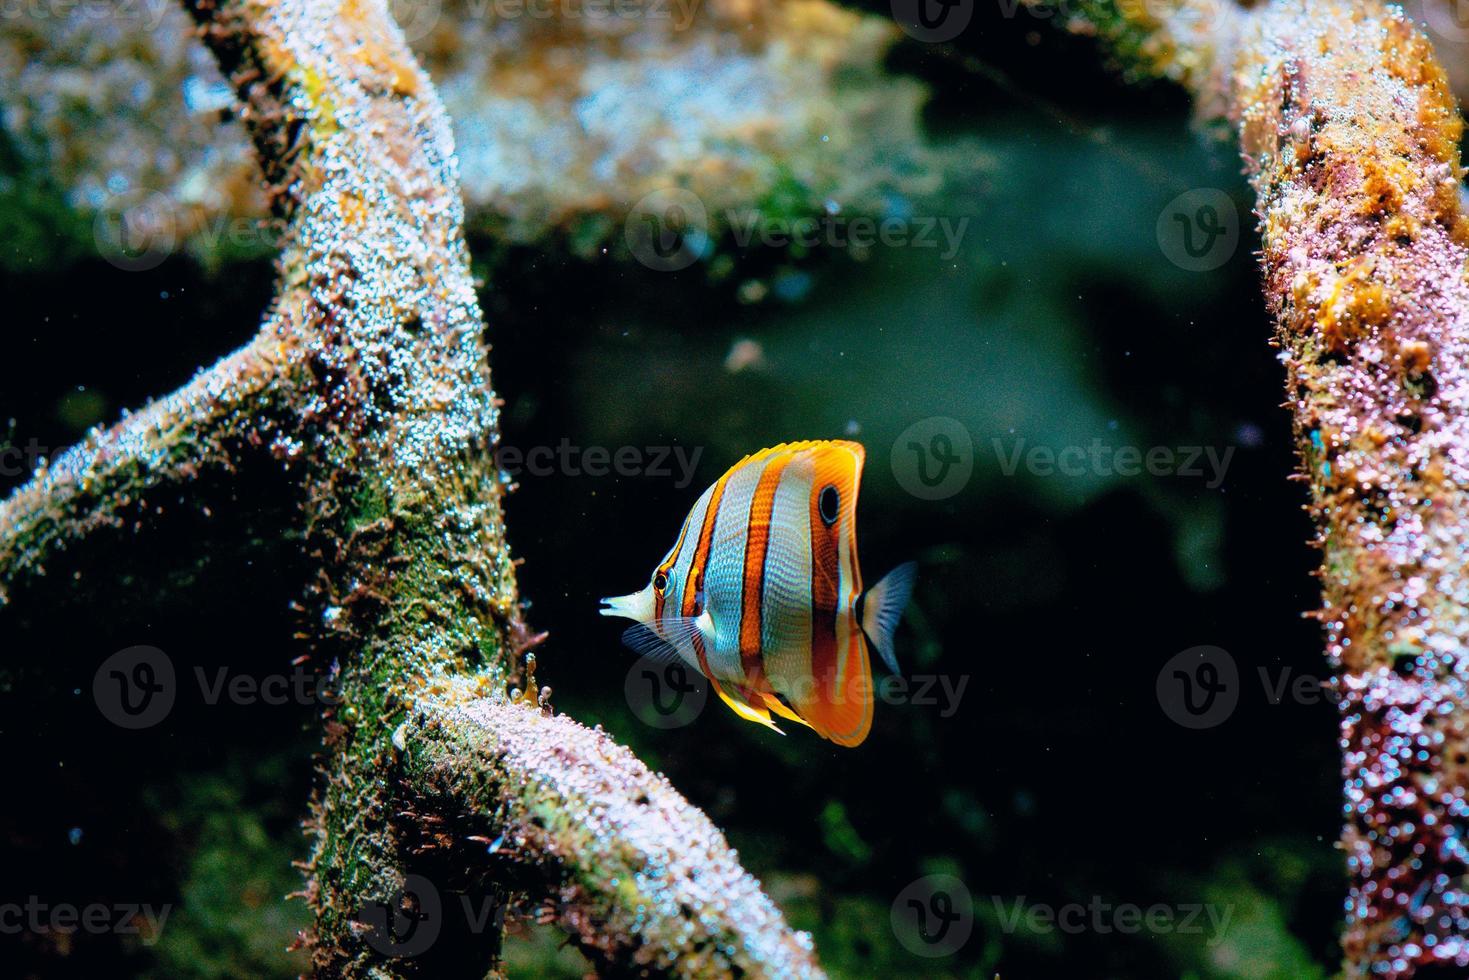 kleurrijke tropische vissen en koralen onder water in het aquarium foto